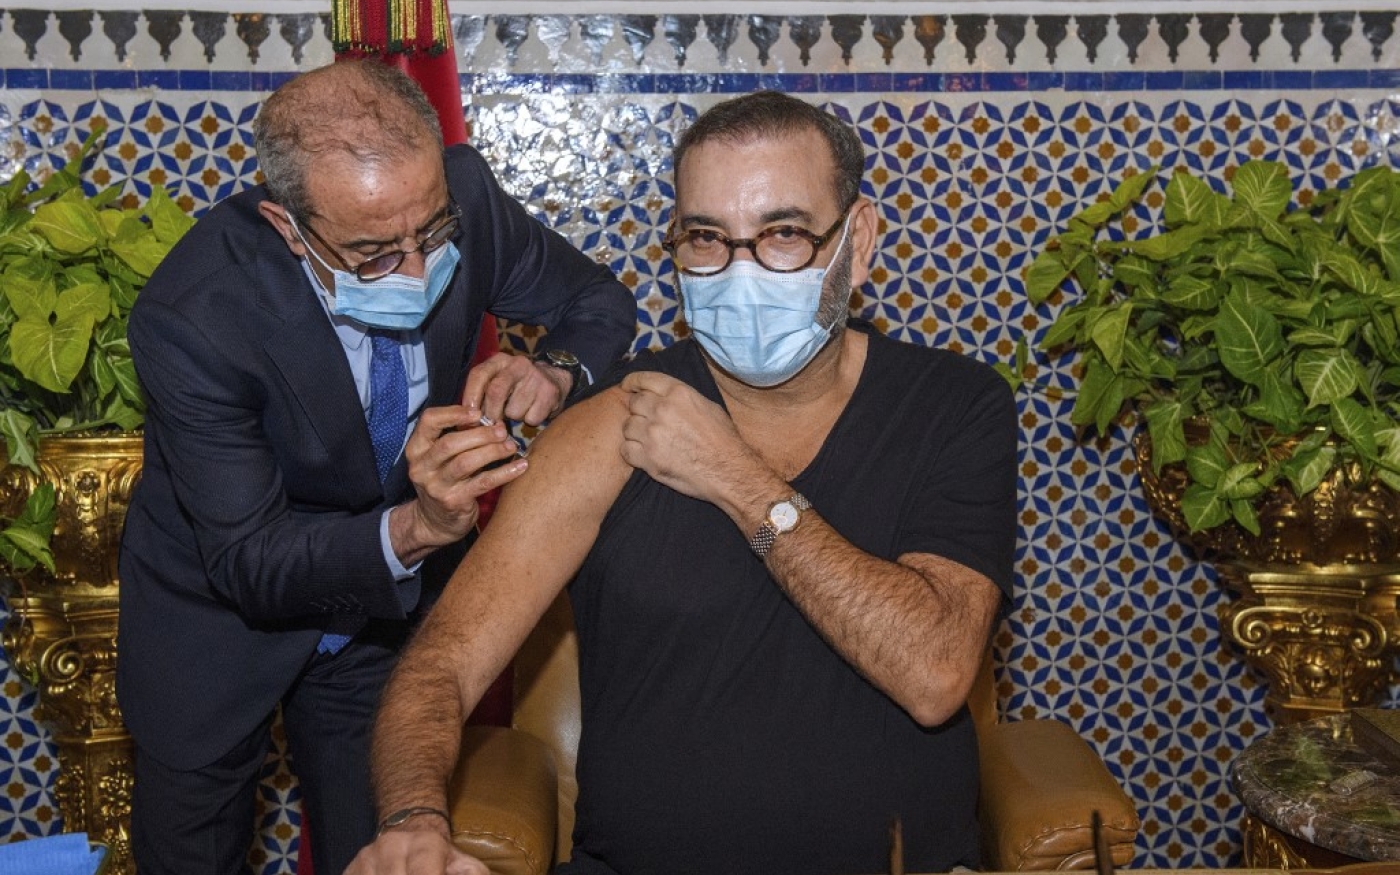 Le roi Mohammed VI se fait vacciner contre le COVID-19, le 28 janvier 2021 (AFP)